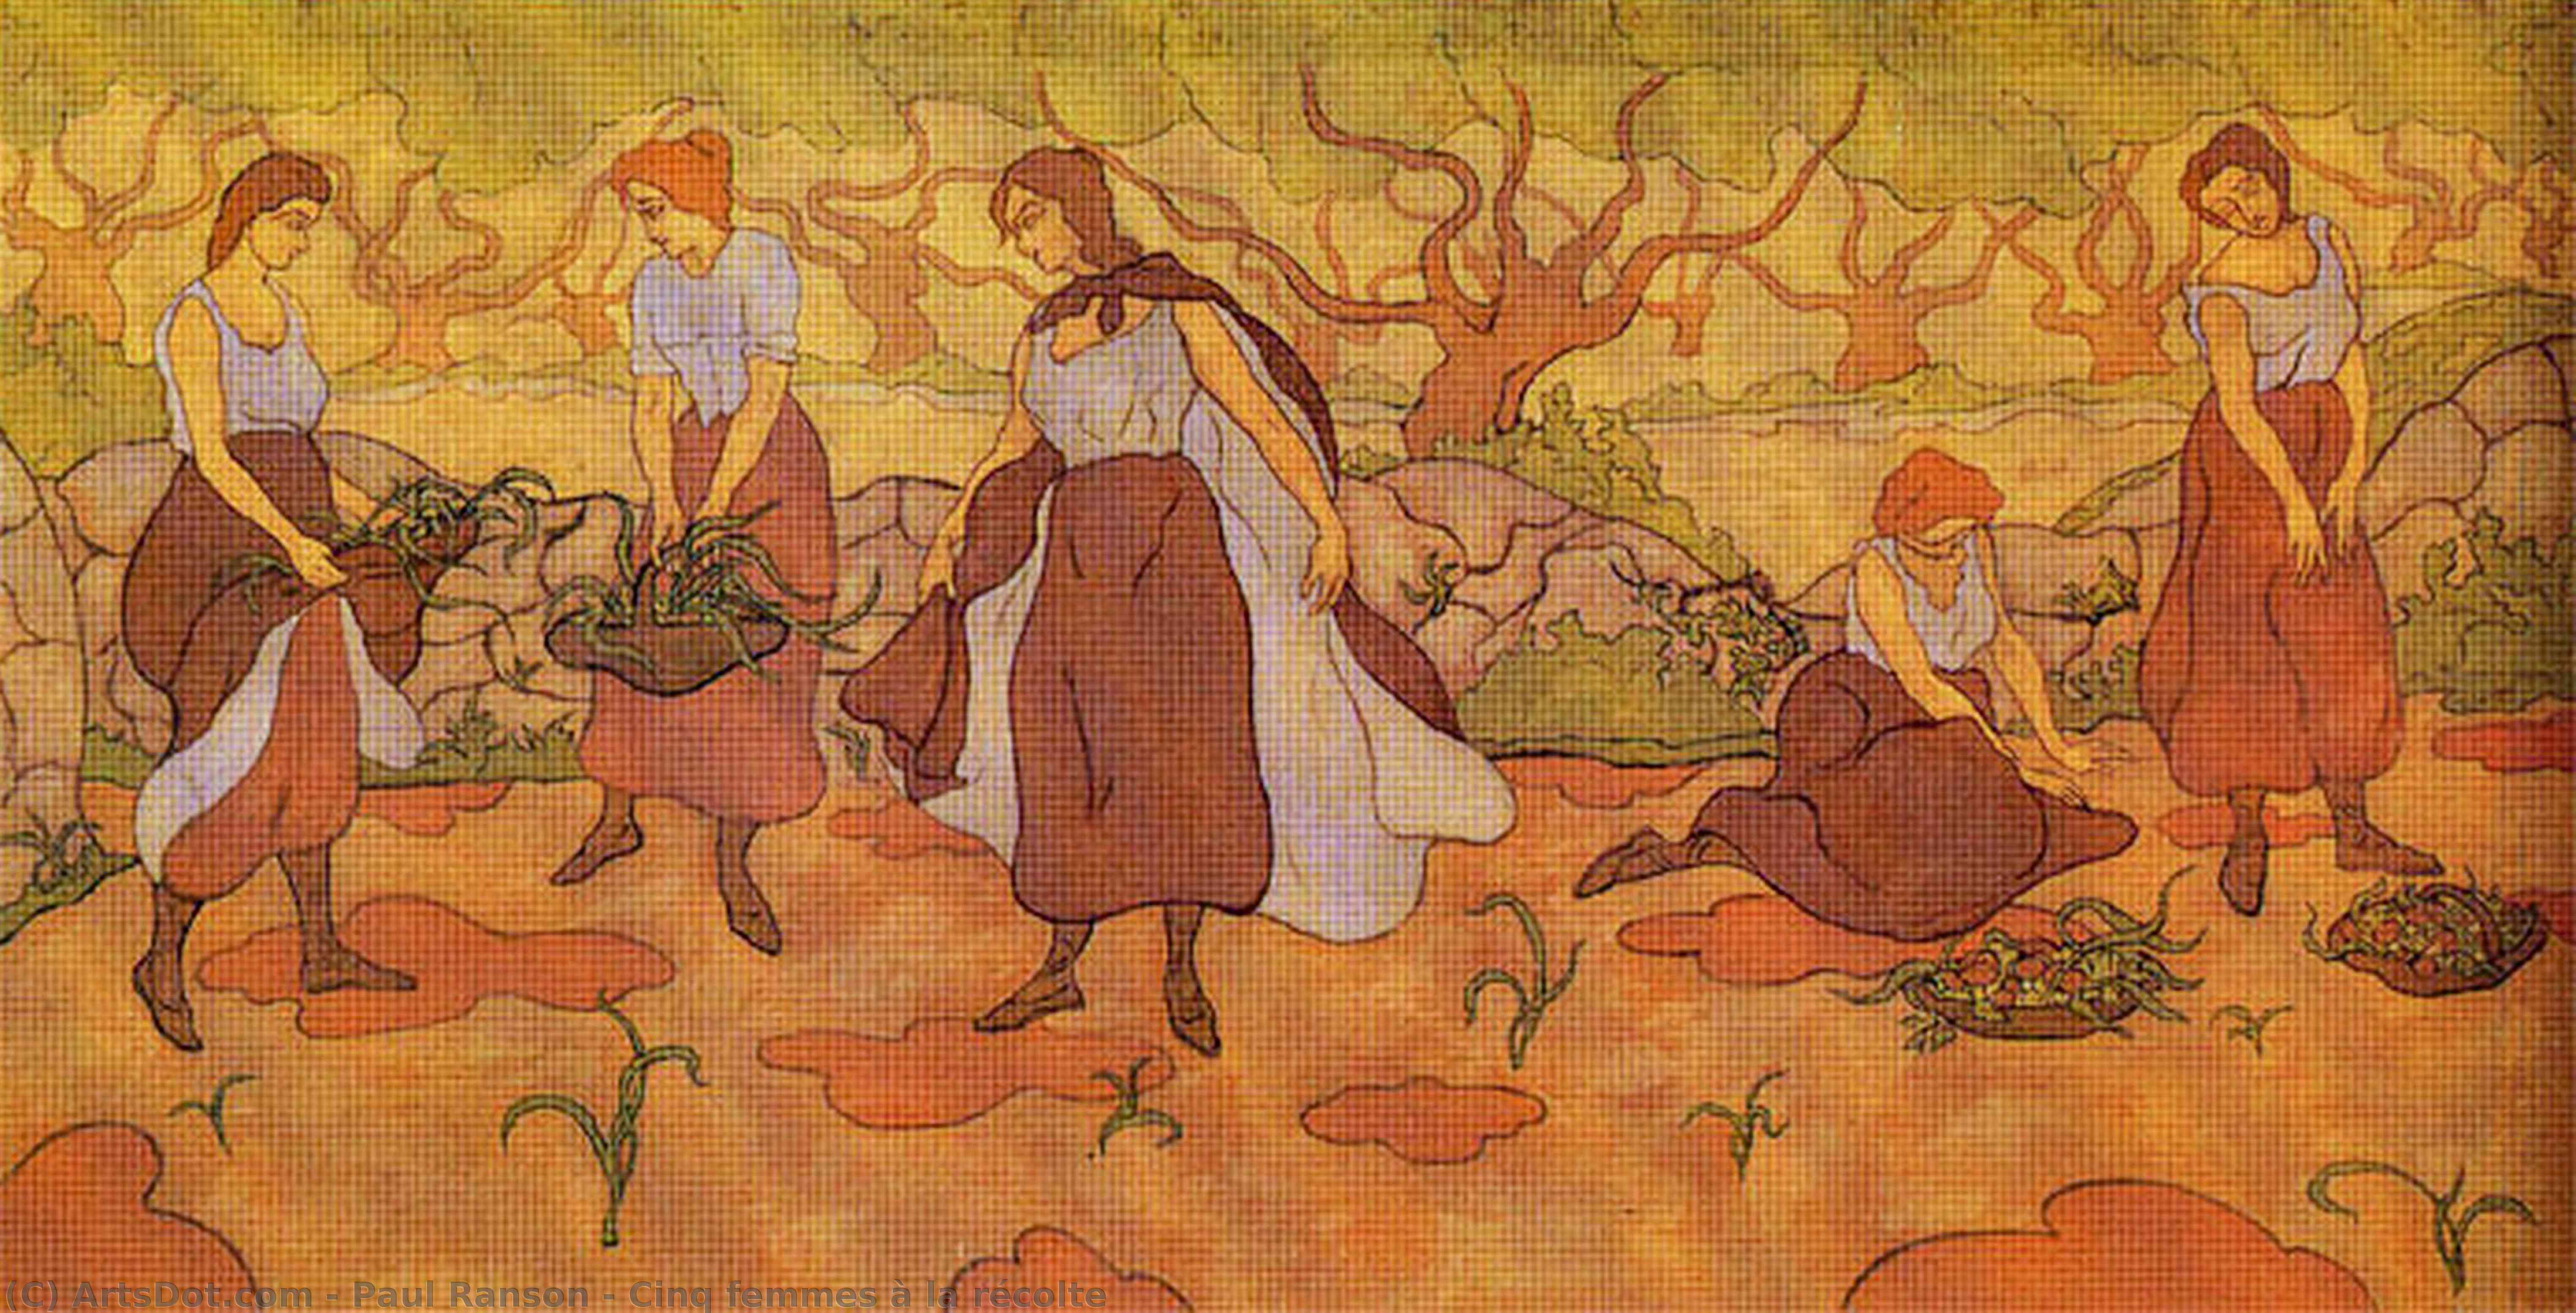 Wikioo.org - The Encyclopedia of Fine Arts - Painting, Artwork by Paul Ranson - Cinq femmes à la récolte